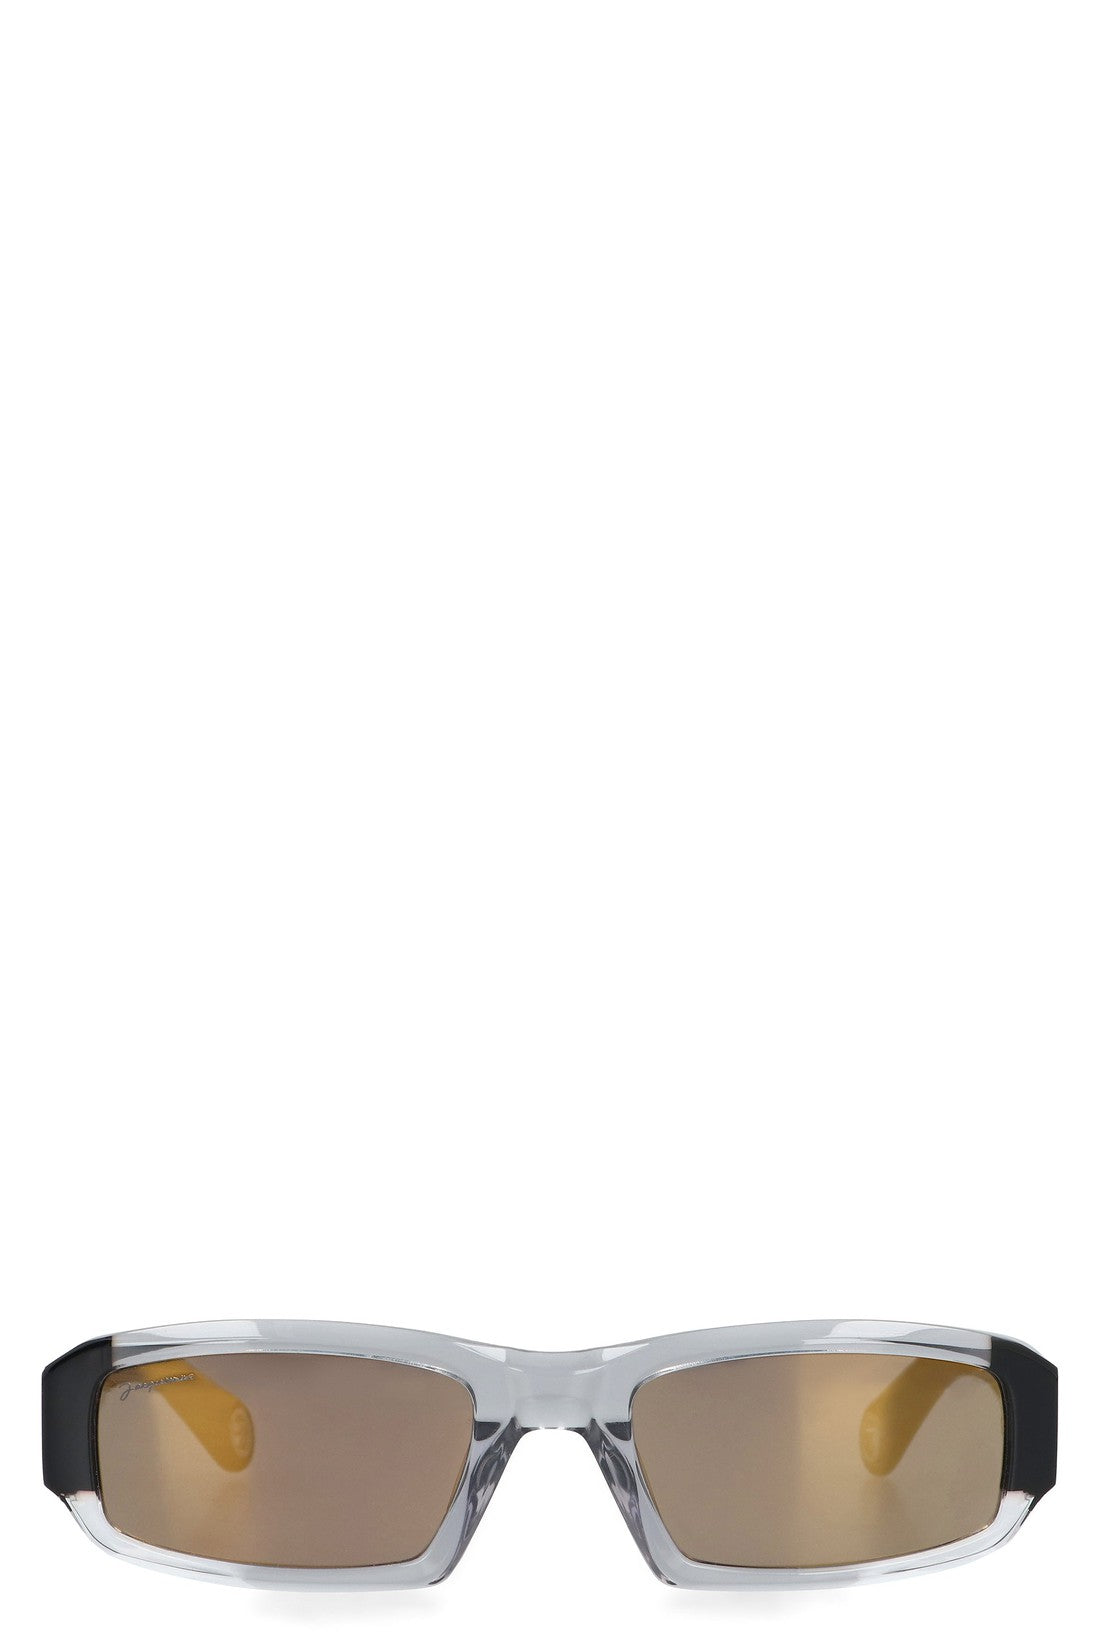 Jacquemus-OUTLET-SALE-Altù Rectangular frame sunglasses-ARCHIVIST